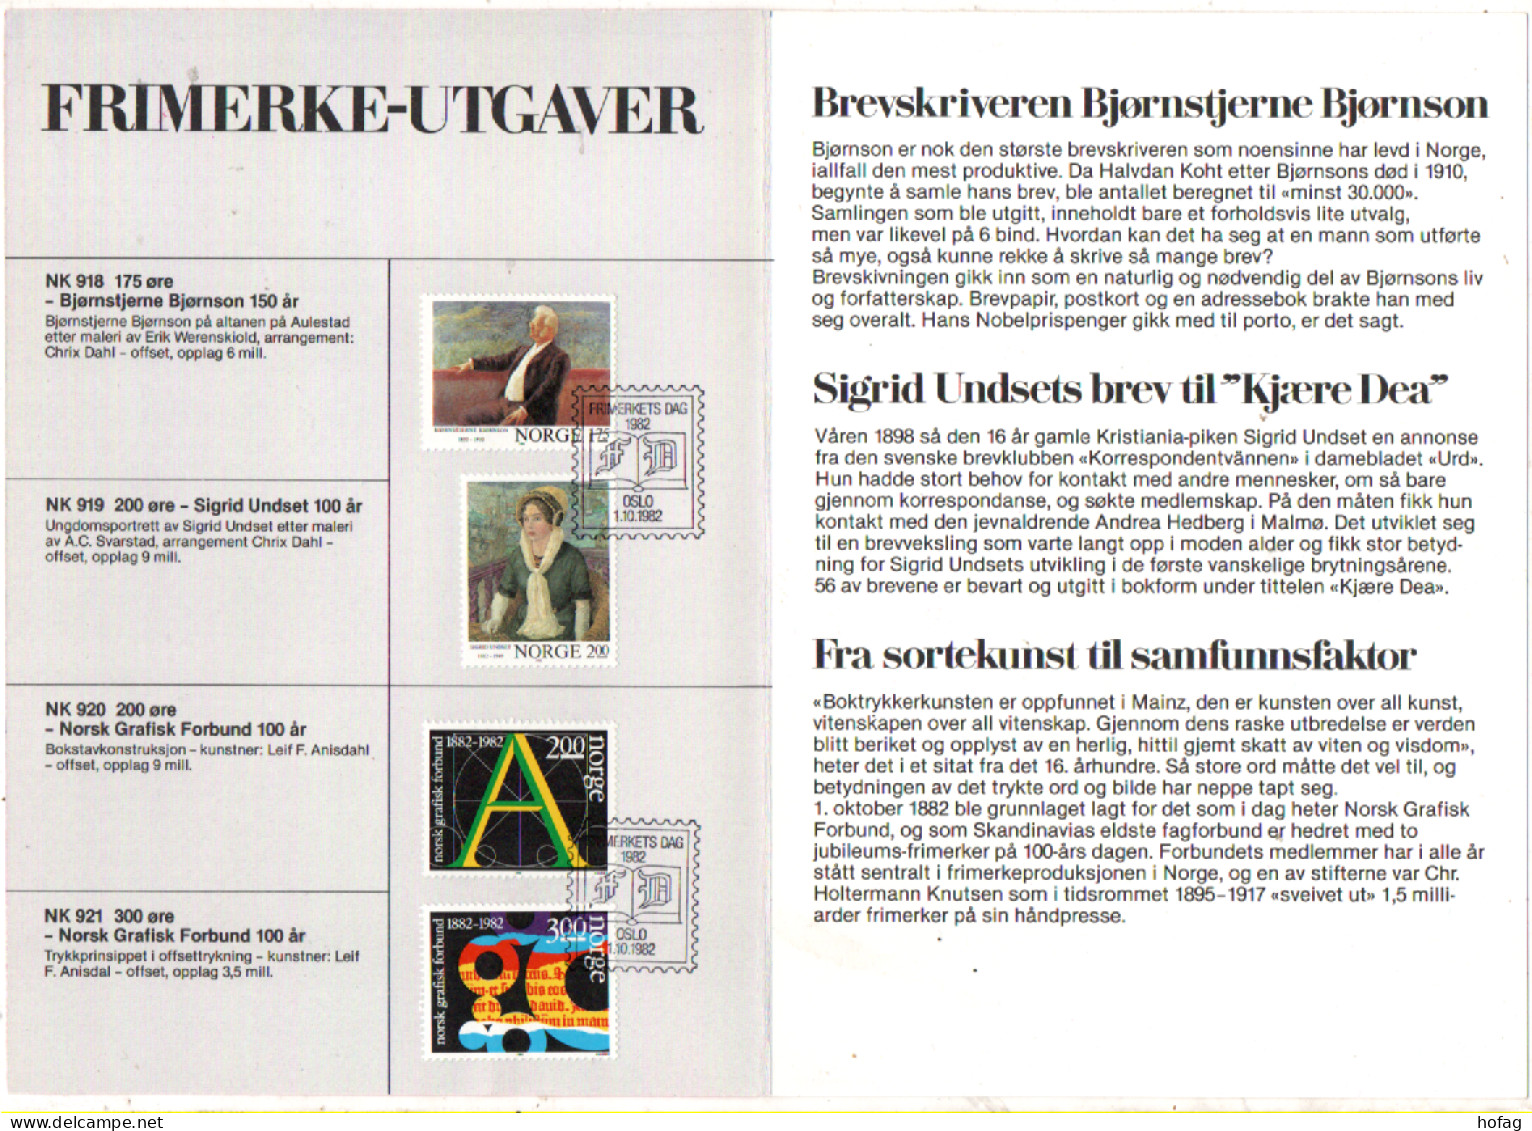 Norwegen 1982 Det Skrevne Ord Motivblad 1 Sonderstempel Frimerkets Dag; Norway - Lettres & Documents